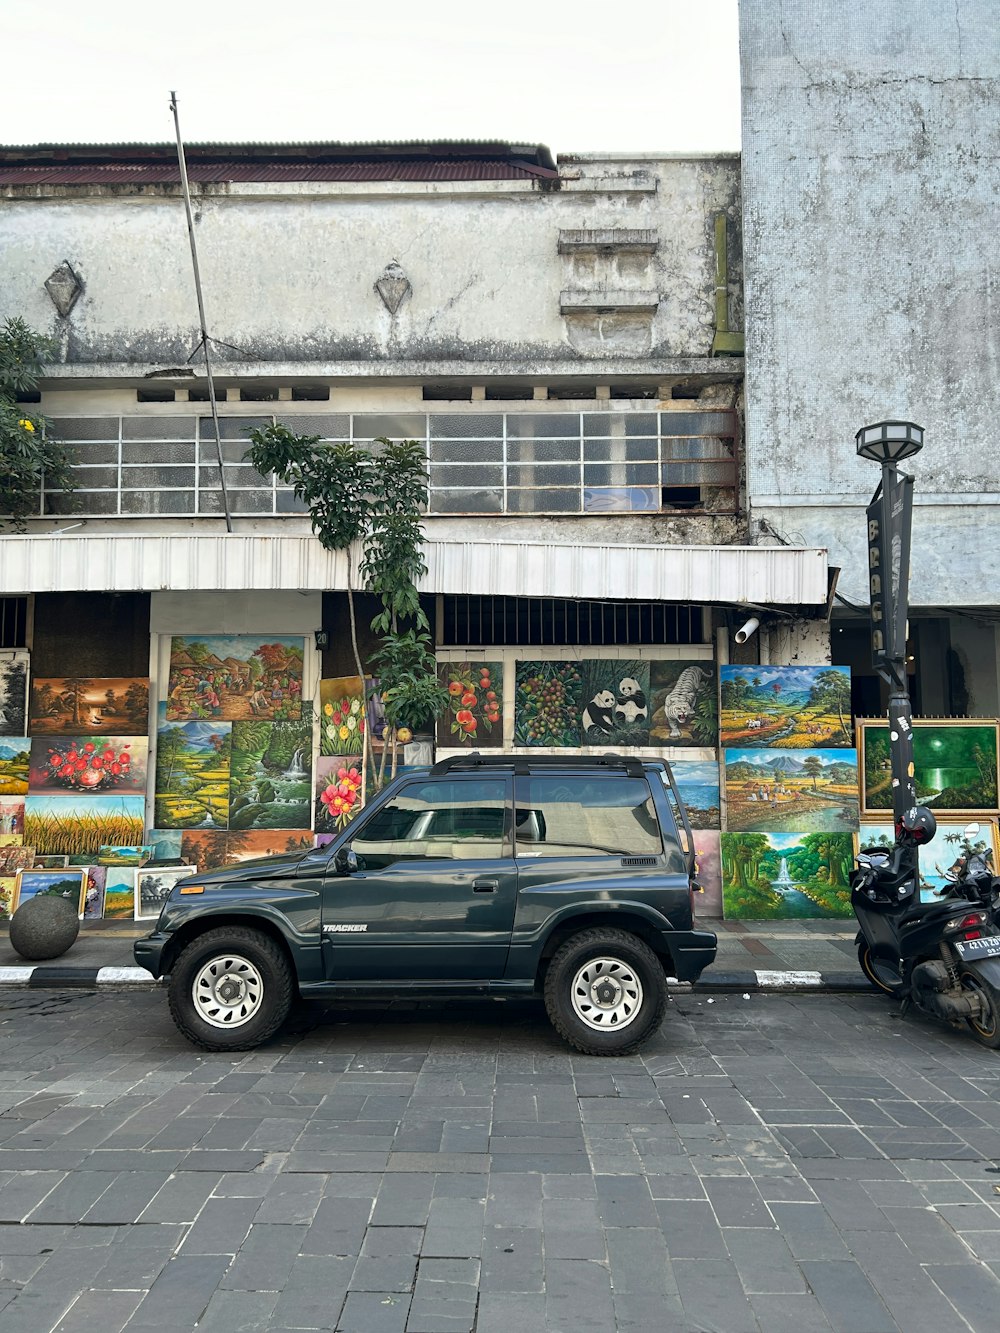 絵が描かれた建物の前に停められた車